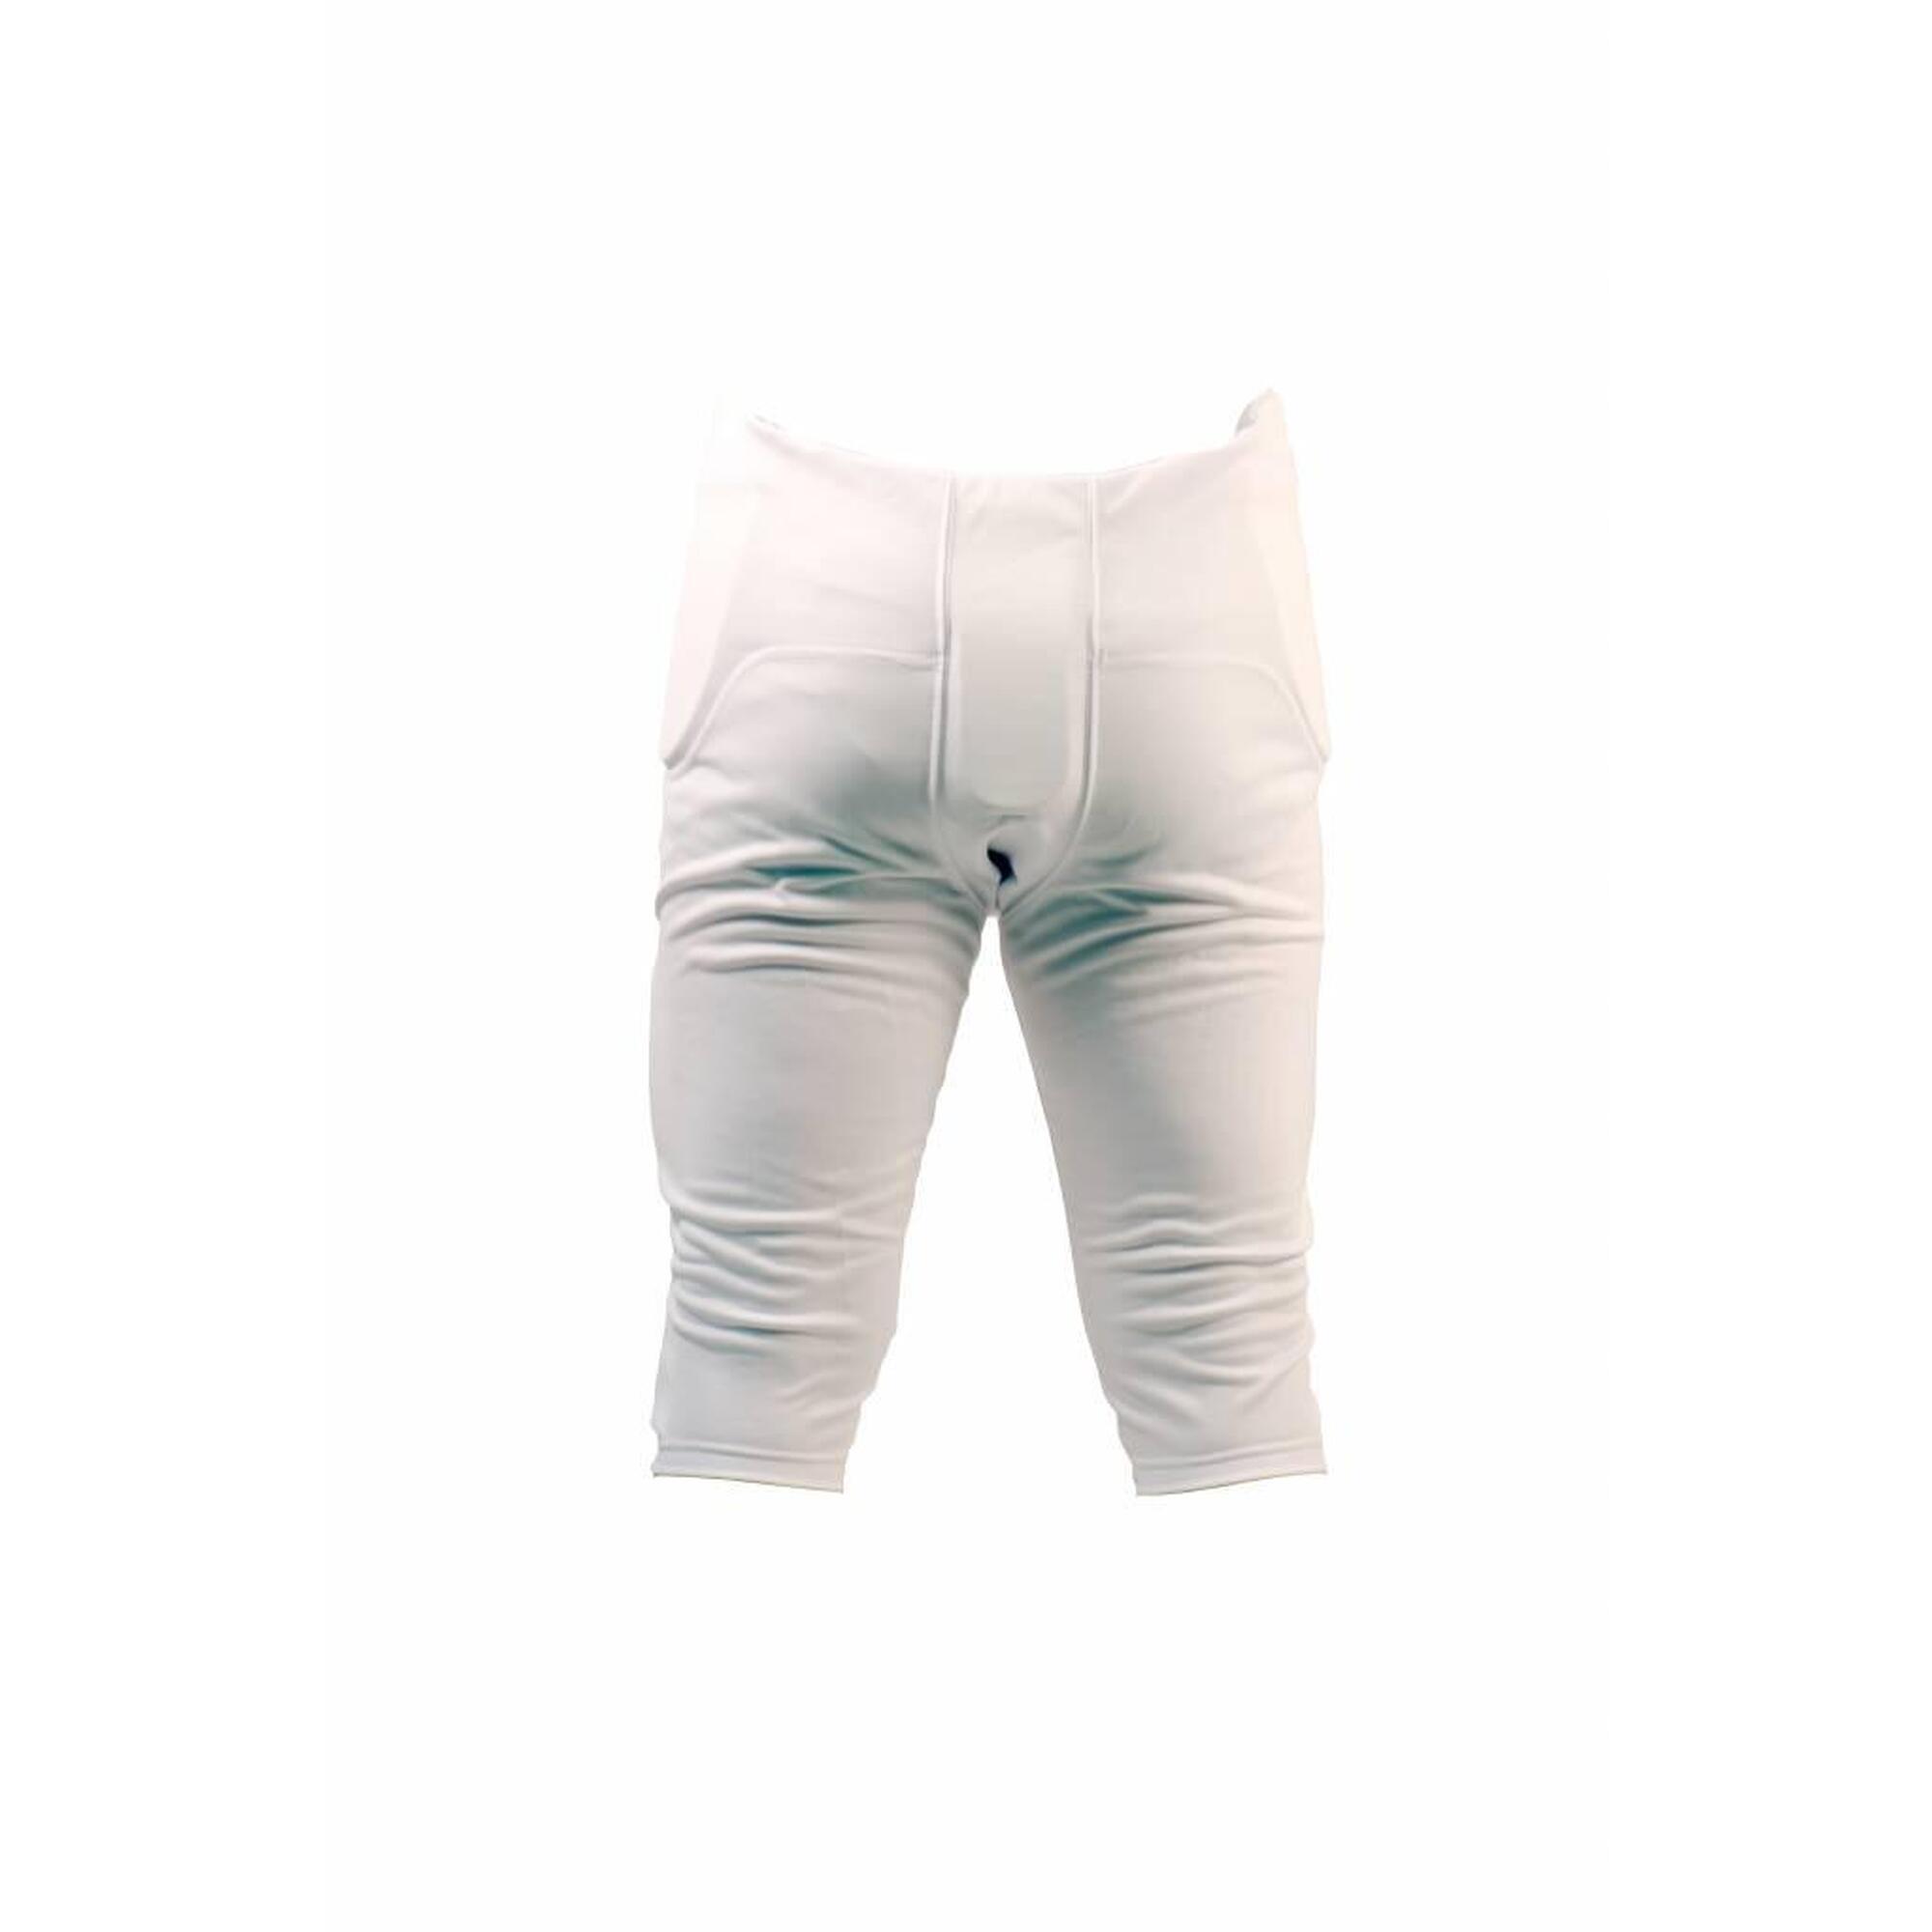 FPS-01 Blanc pantalon avec protections intégrées, 7 pads